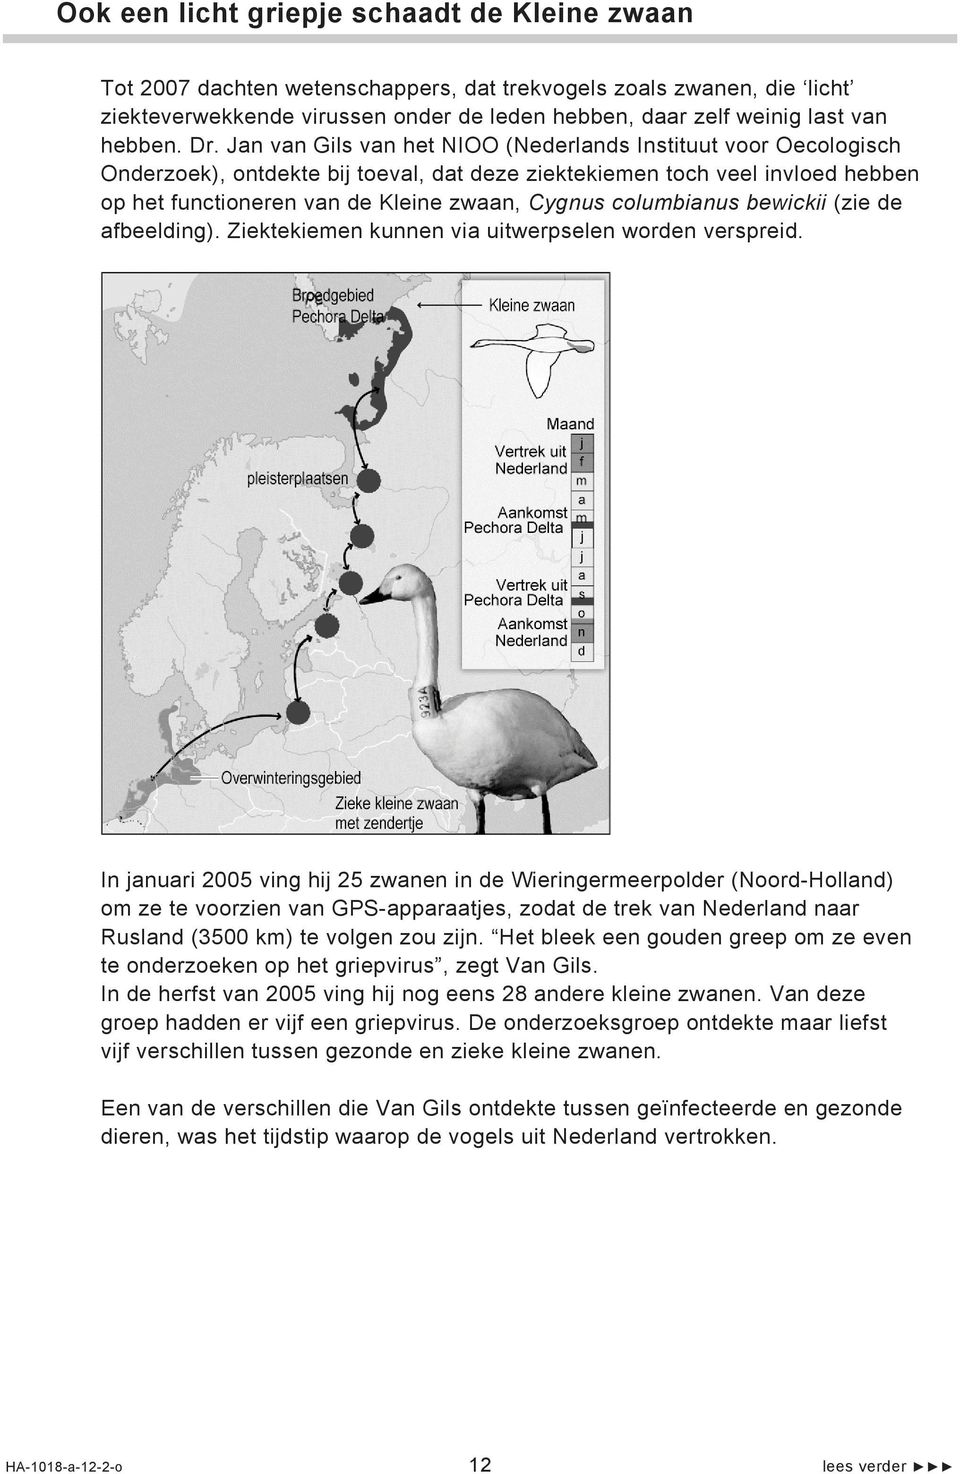 Jan van Gils van het NIOO (Nederlands Instituut voor Oecologisch Onderzoek), ontdekte bij toeval, dat deze ziektekiemen toch veel invloed hebben op het functioneren van de Kleine zwaan, Cygnus